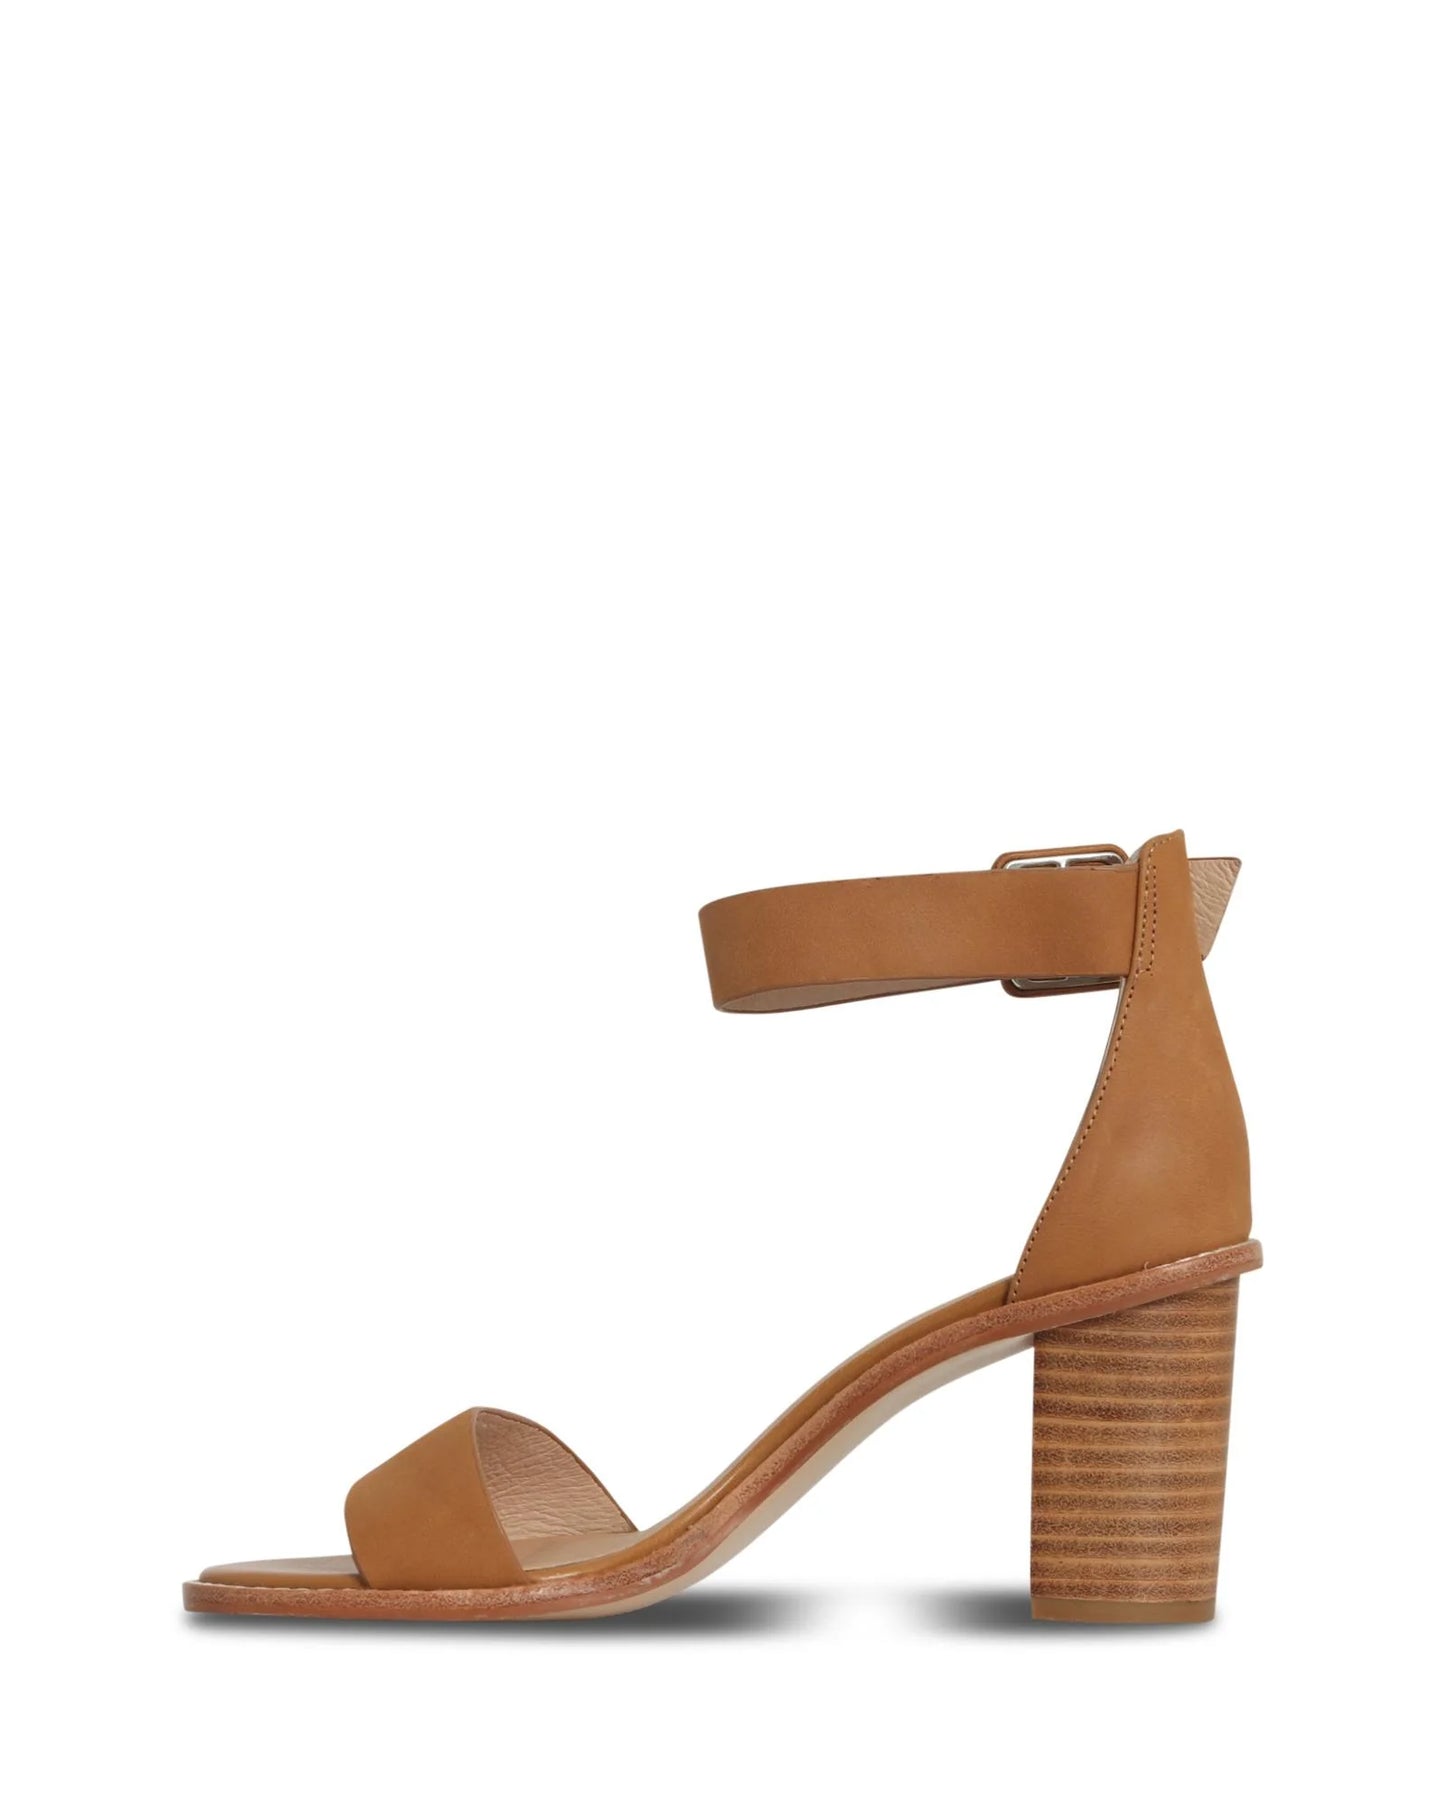 GRADY TAN - NUDE FOOTWEAR - 36, 37, 38, 39, 40, 41, BF, TAN, womens footwear - Stomp Shoes Darwin